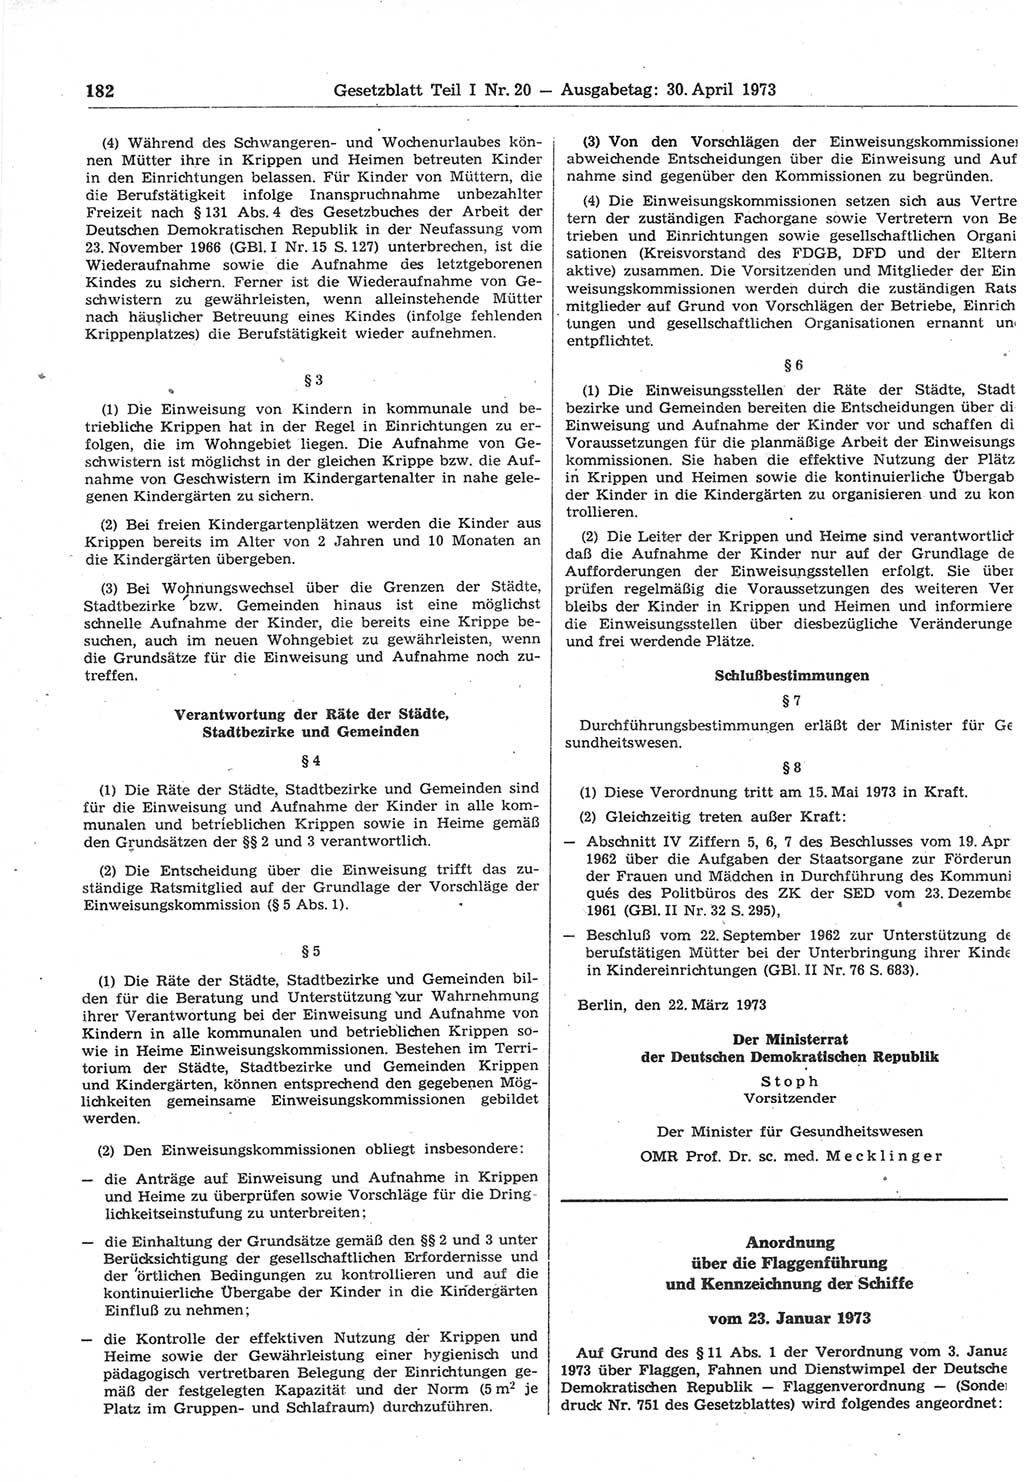 Gesetzblatt (GBl.) der Deutschen Demokratischen Republik (DDR) Teil Ⅰ 1973, Seite 182 (GBl. DDR Ⅰ 1973, S. 182)